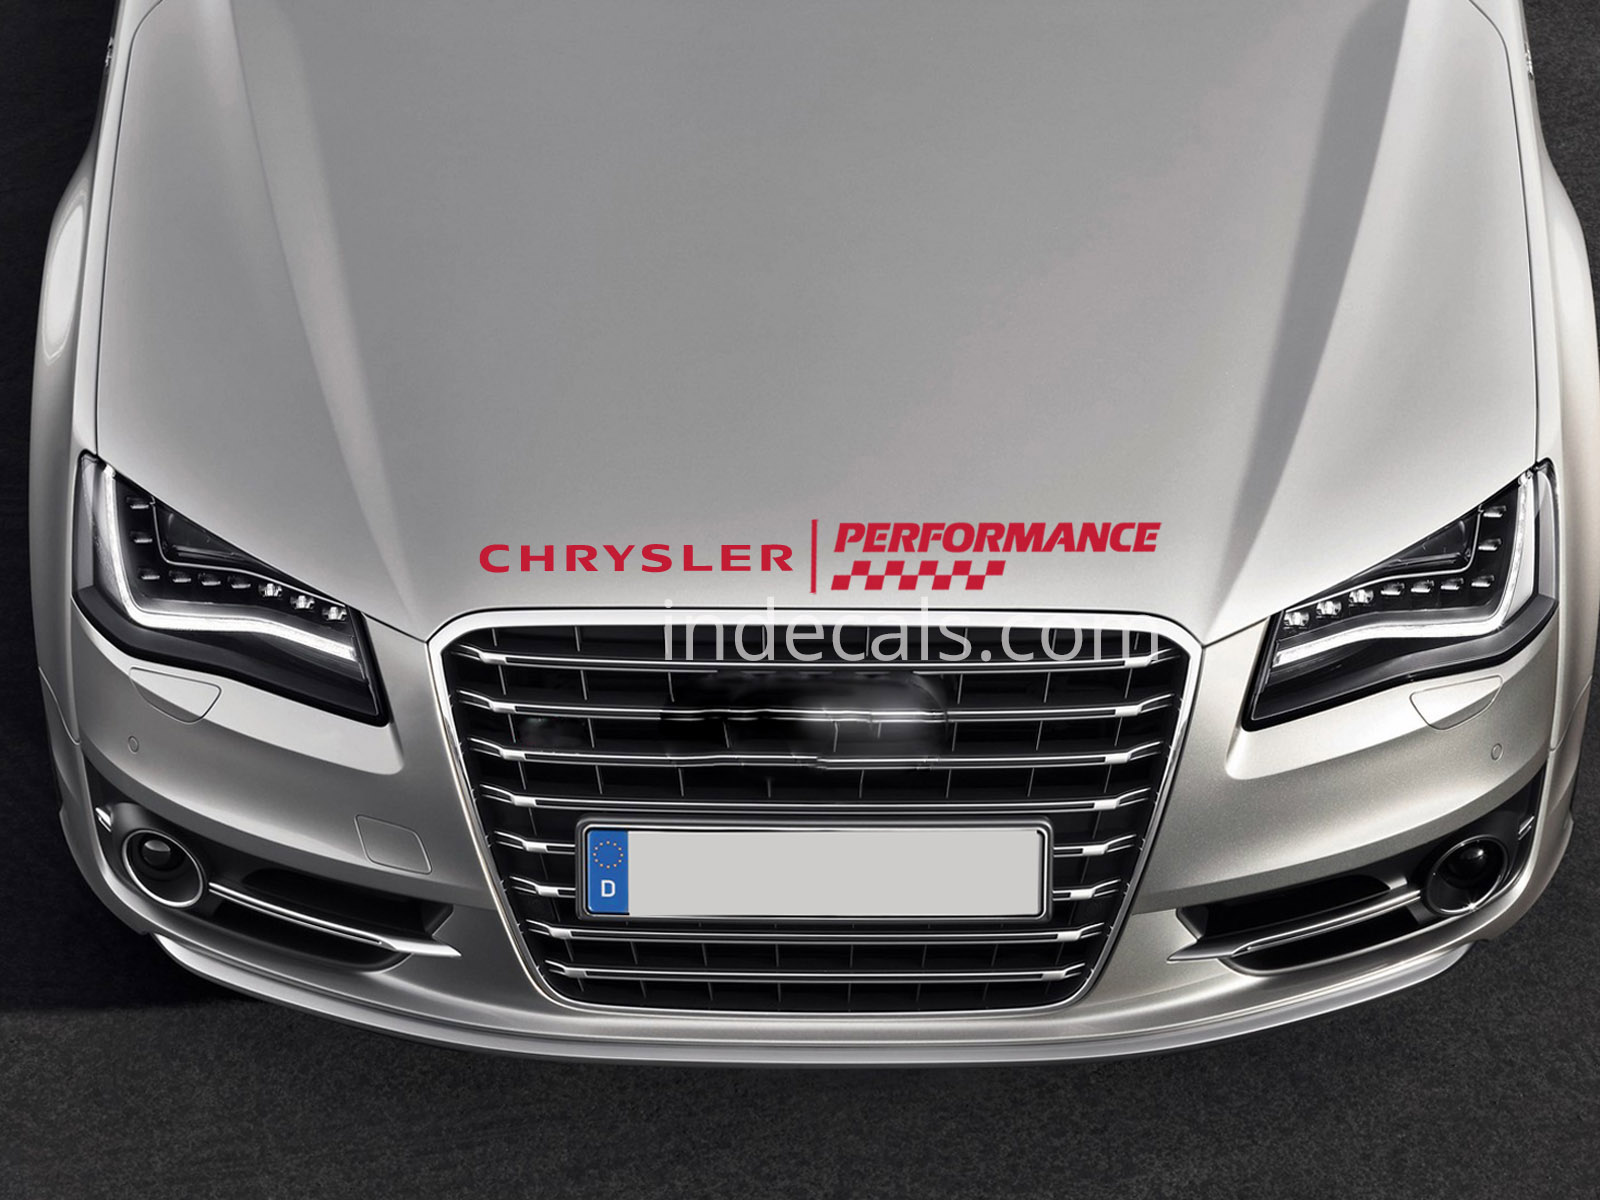 1 x Chrysler Performance Sticker for Bonnet - Red